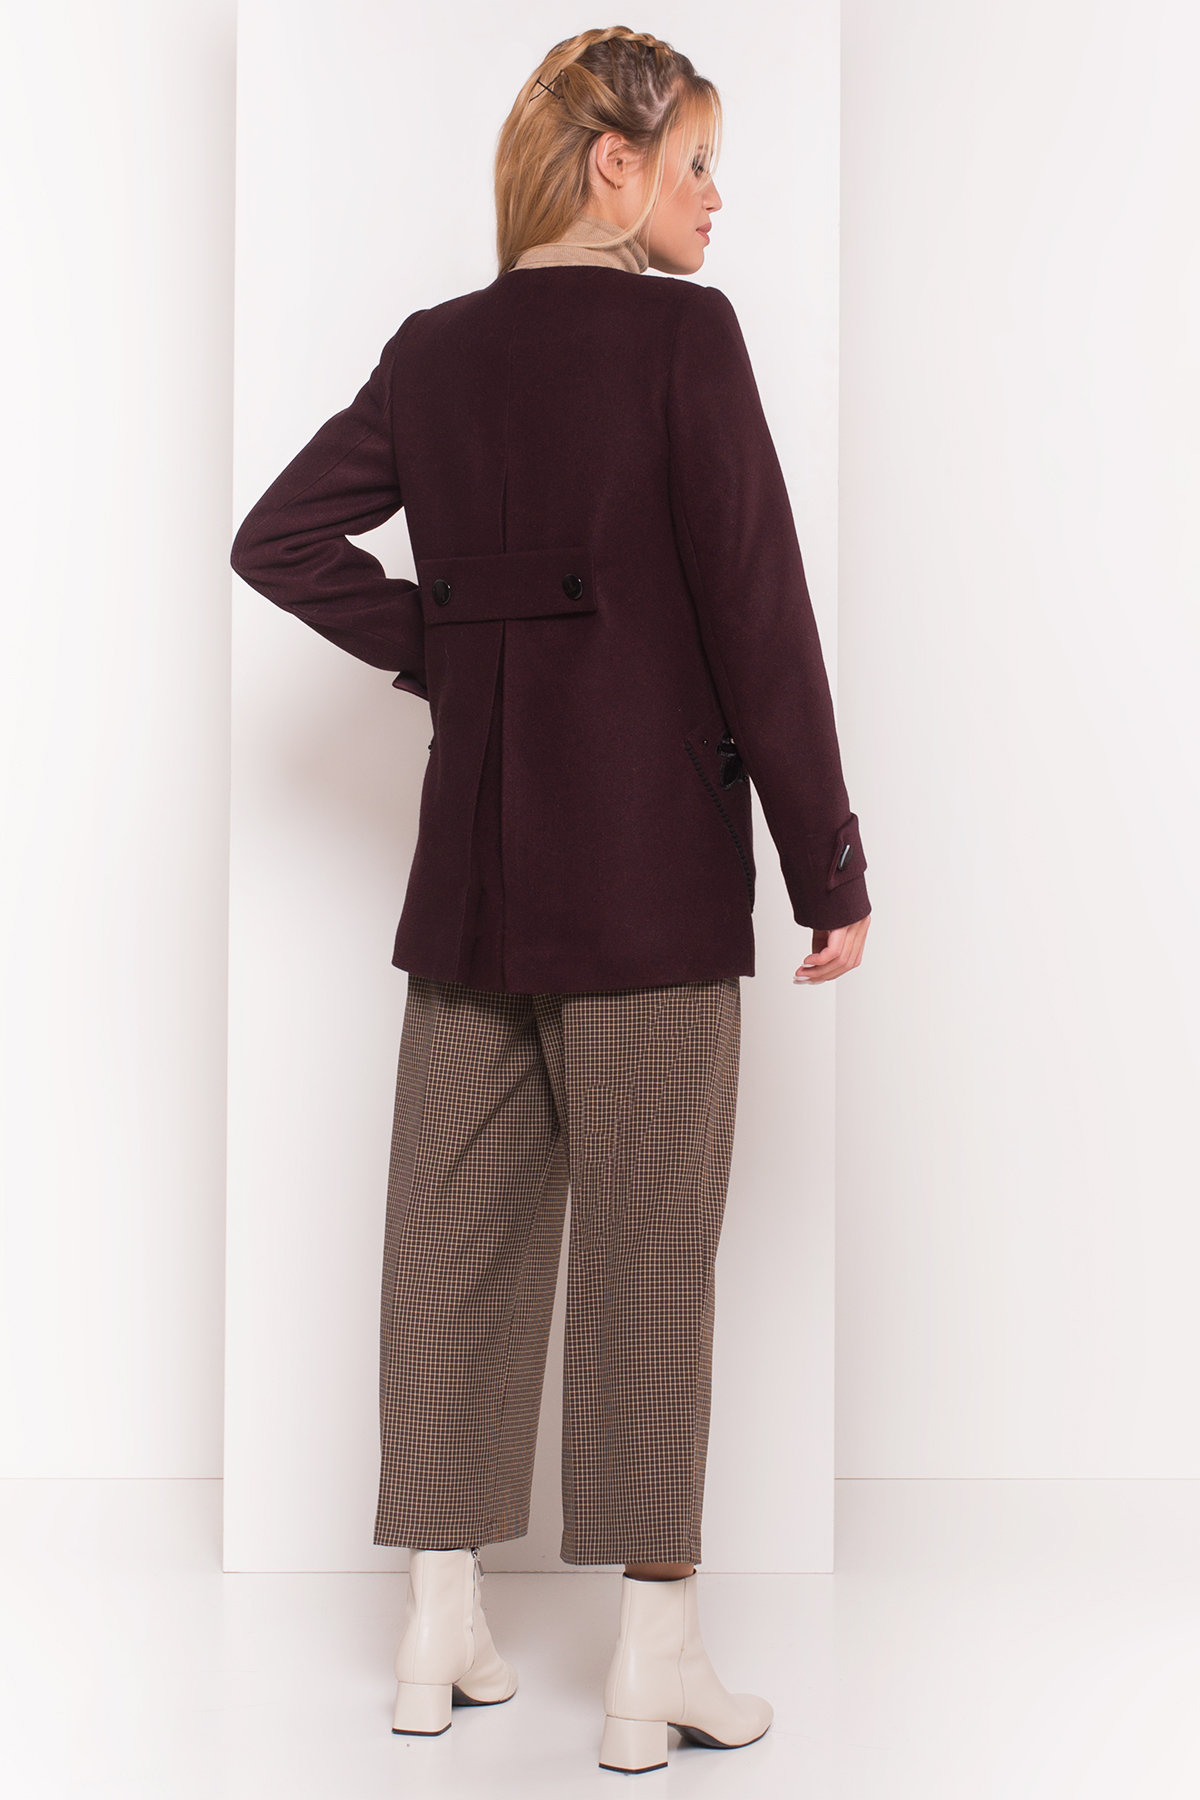 Укороченное пальто-трапеция с вышивкой Латта 5526 Цвет: Марсала 75